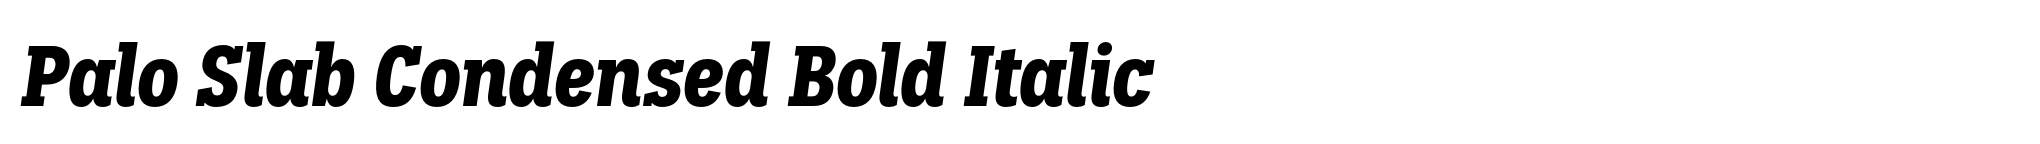 Palo Slab Condensed Bold Italic image